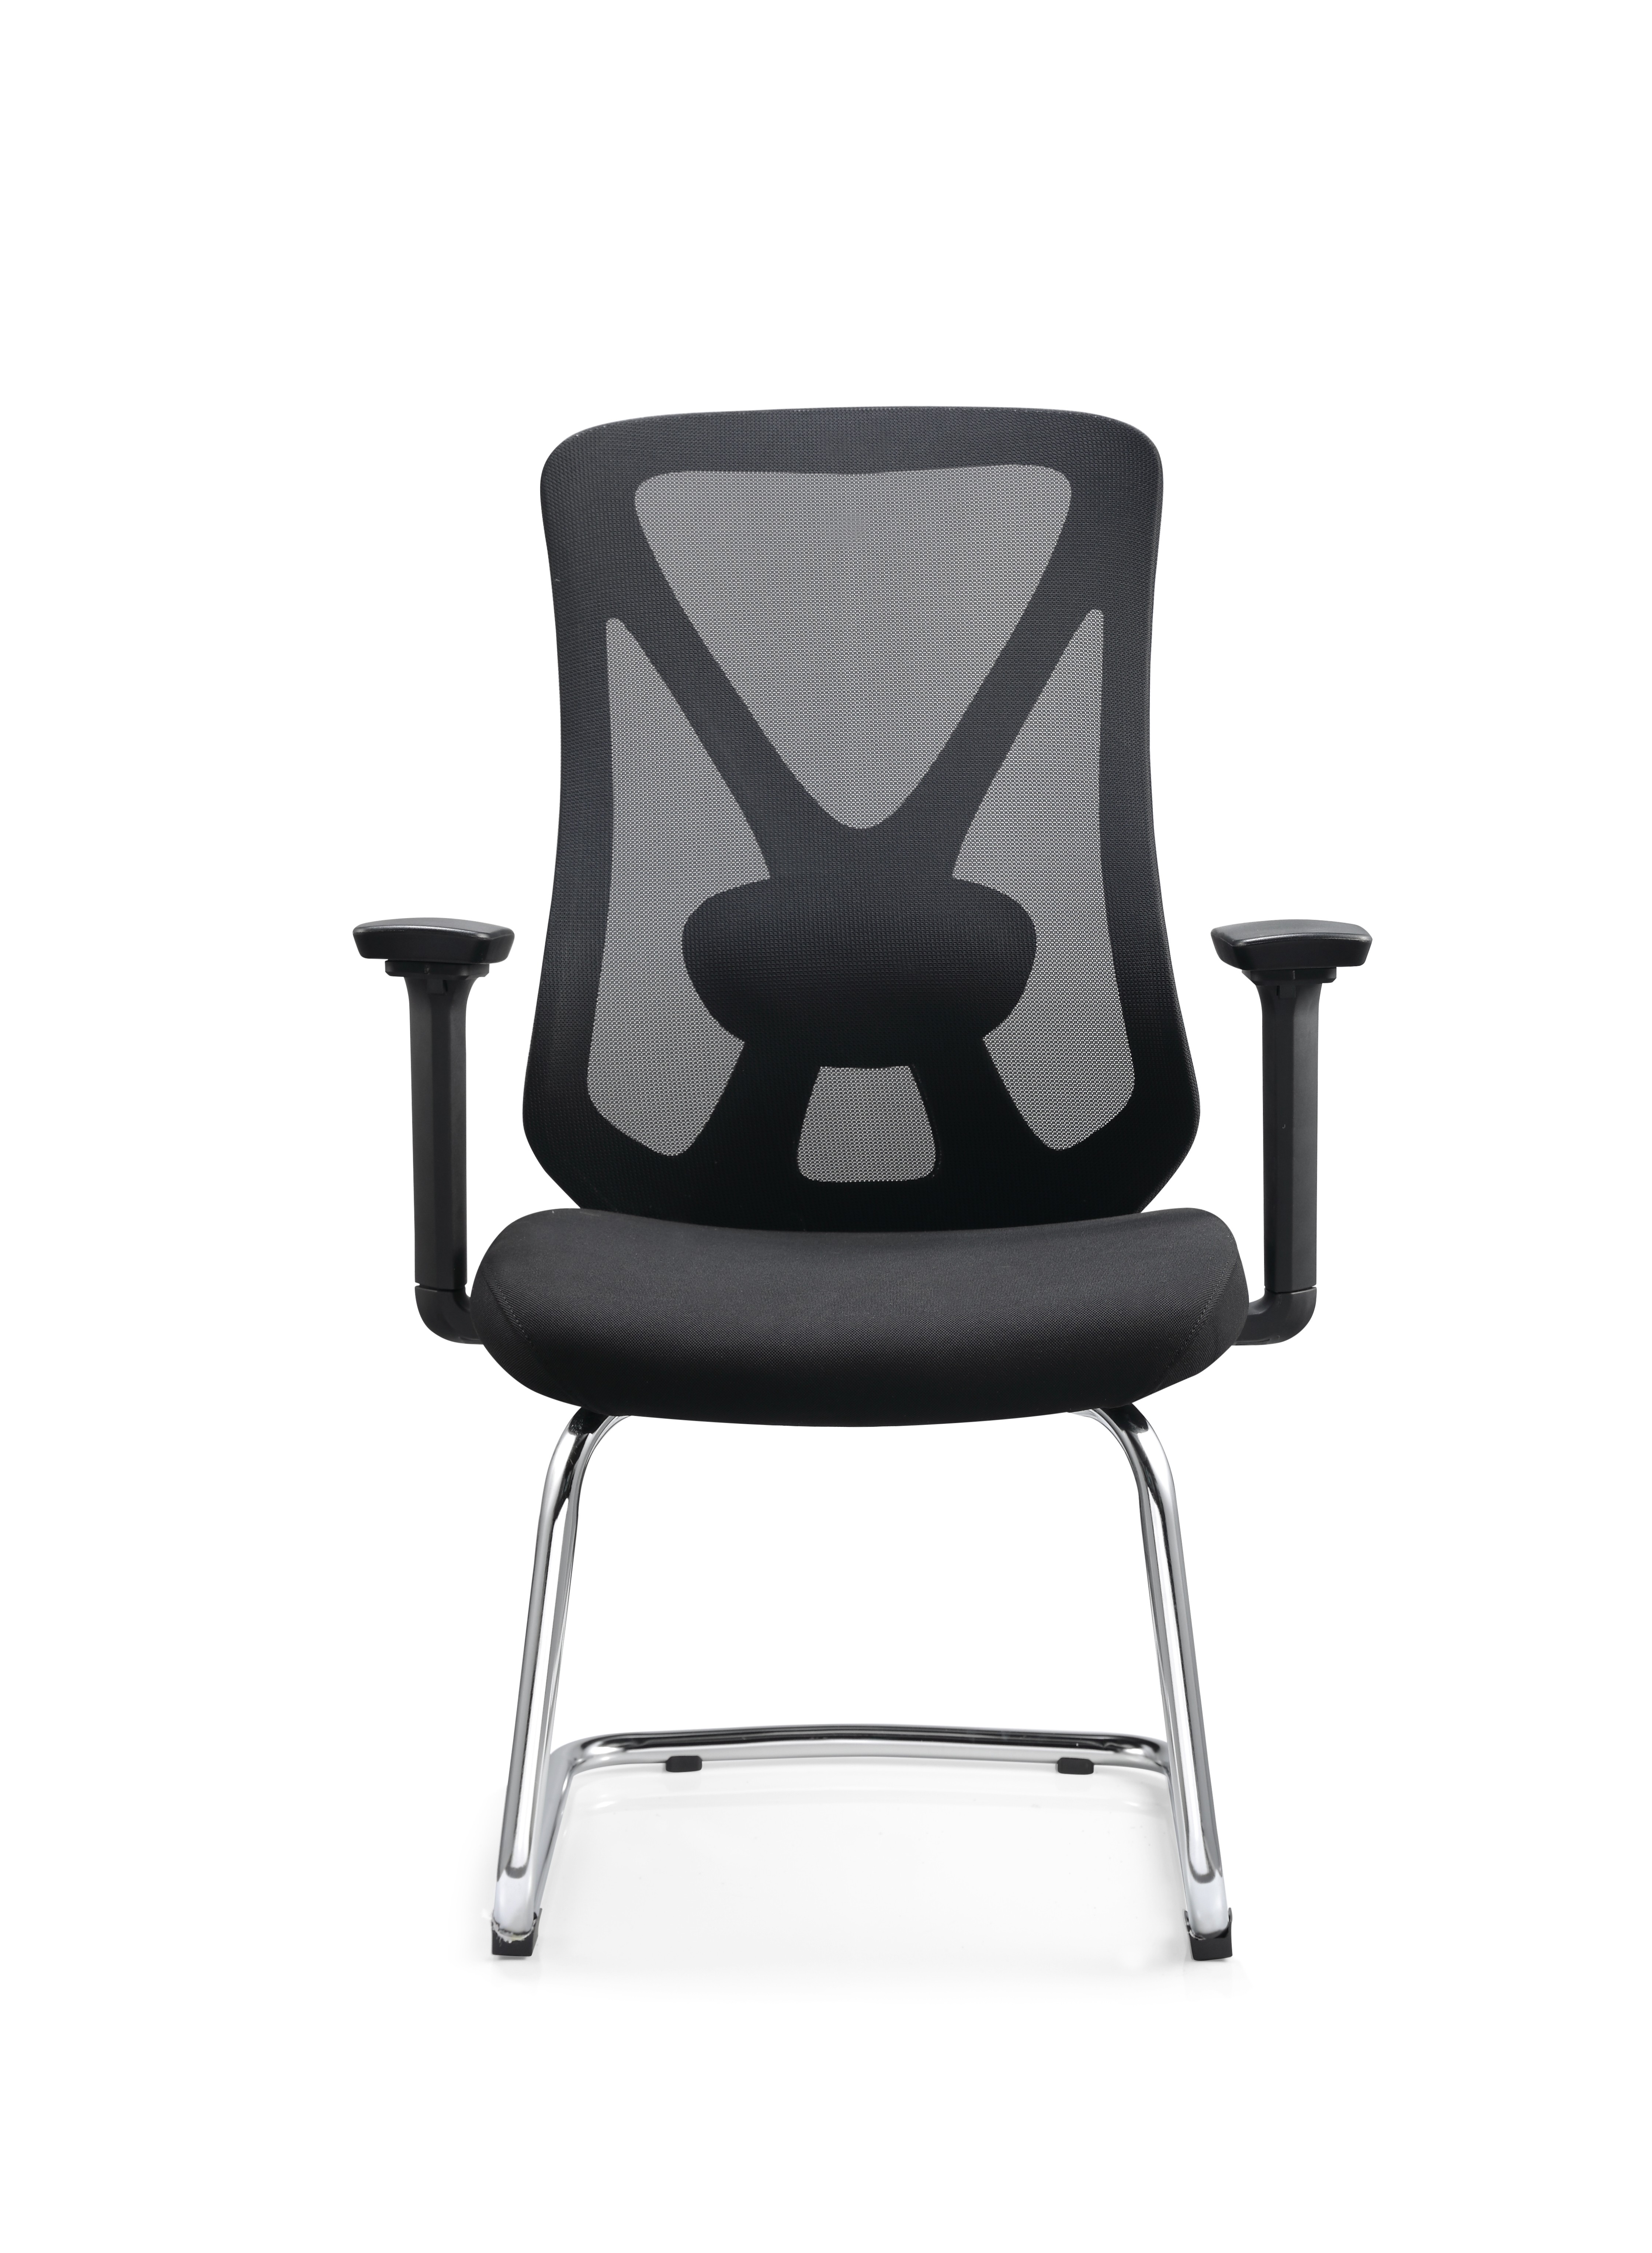 China Newcity 629C Moderno 3D Ajustável Braço Visitante Cadeira de Malha Cadeira de Visitante de Escritório de Vendas Diretas do Fabricante Cadeira de Visitante de Alta Qualidade Cadeira de Visitante Executiva Fornecedor Foshan China fabricante